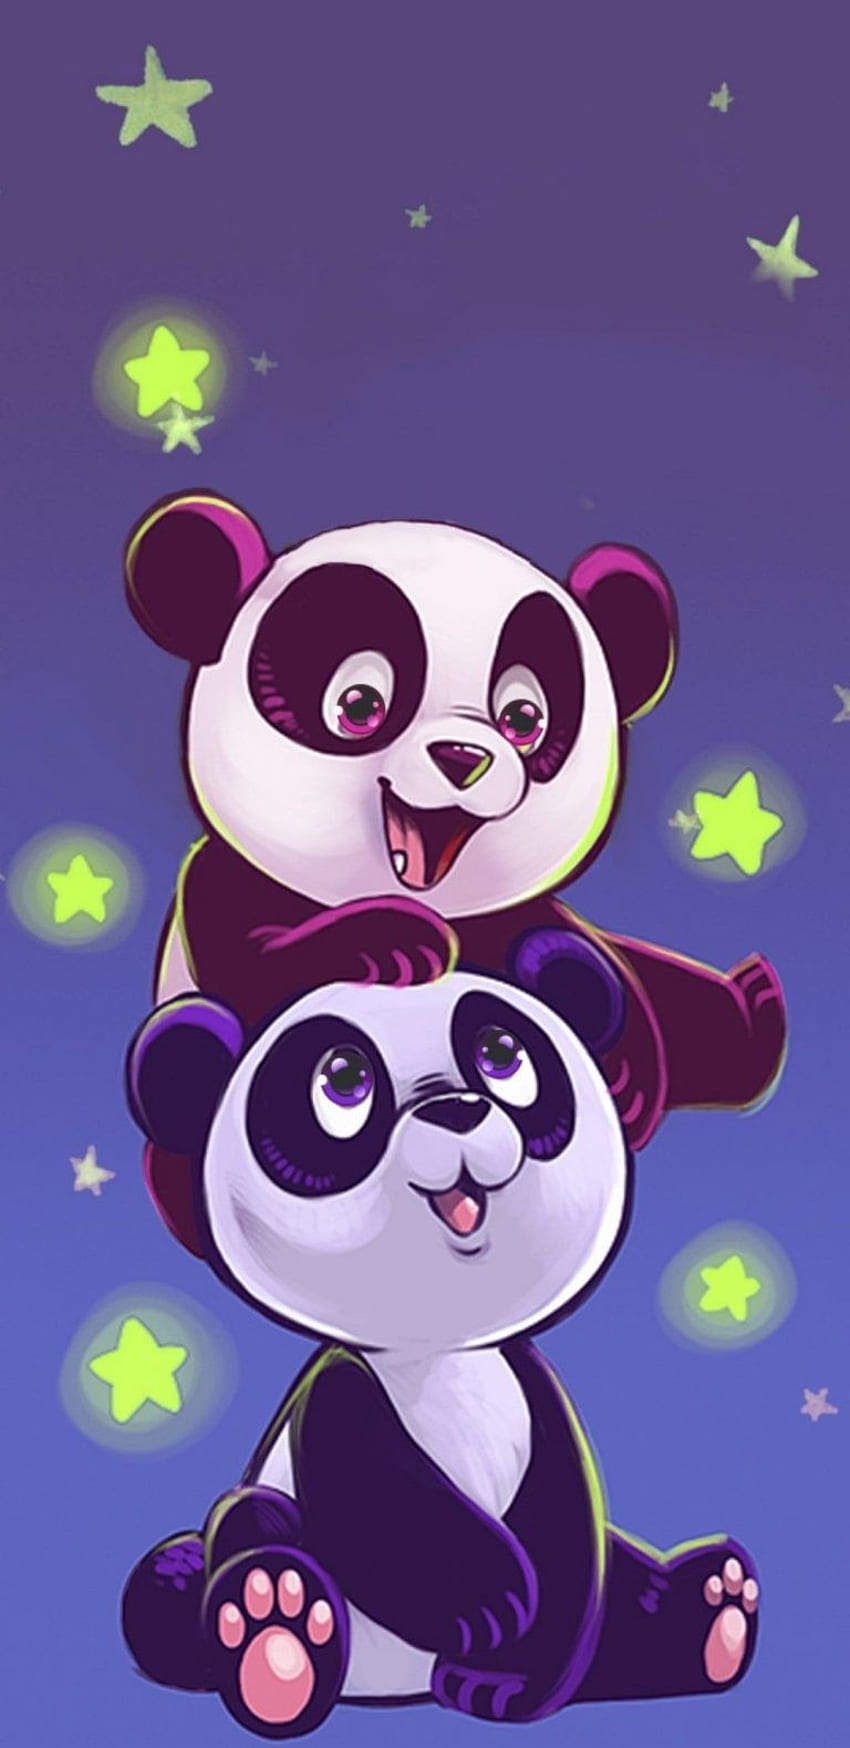 Những chú gấu Panda đáng yêu nhất trong vũ trụ đang chờ đón bạn trên ảnh. Cảm nhận sự kỳ diệu của thiên nhiên và vũ trụ thông qua hình ảnh Galaxy Panda này.